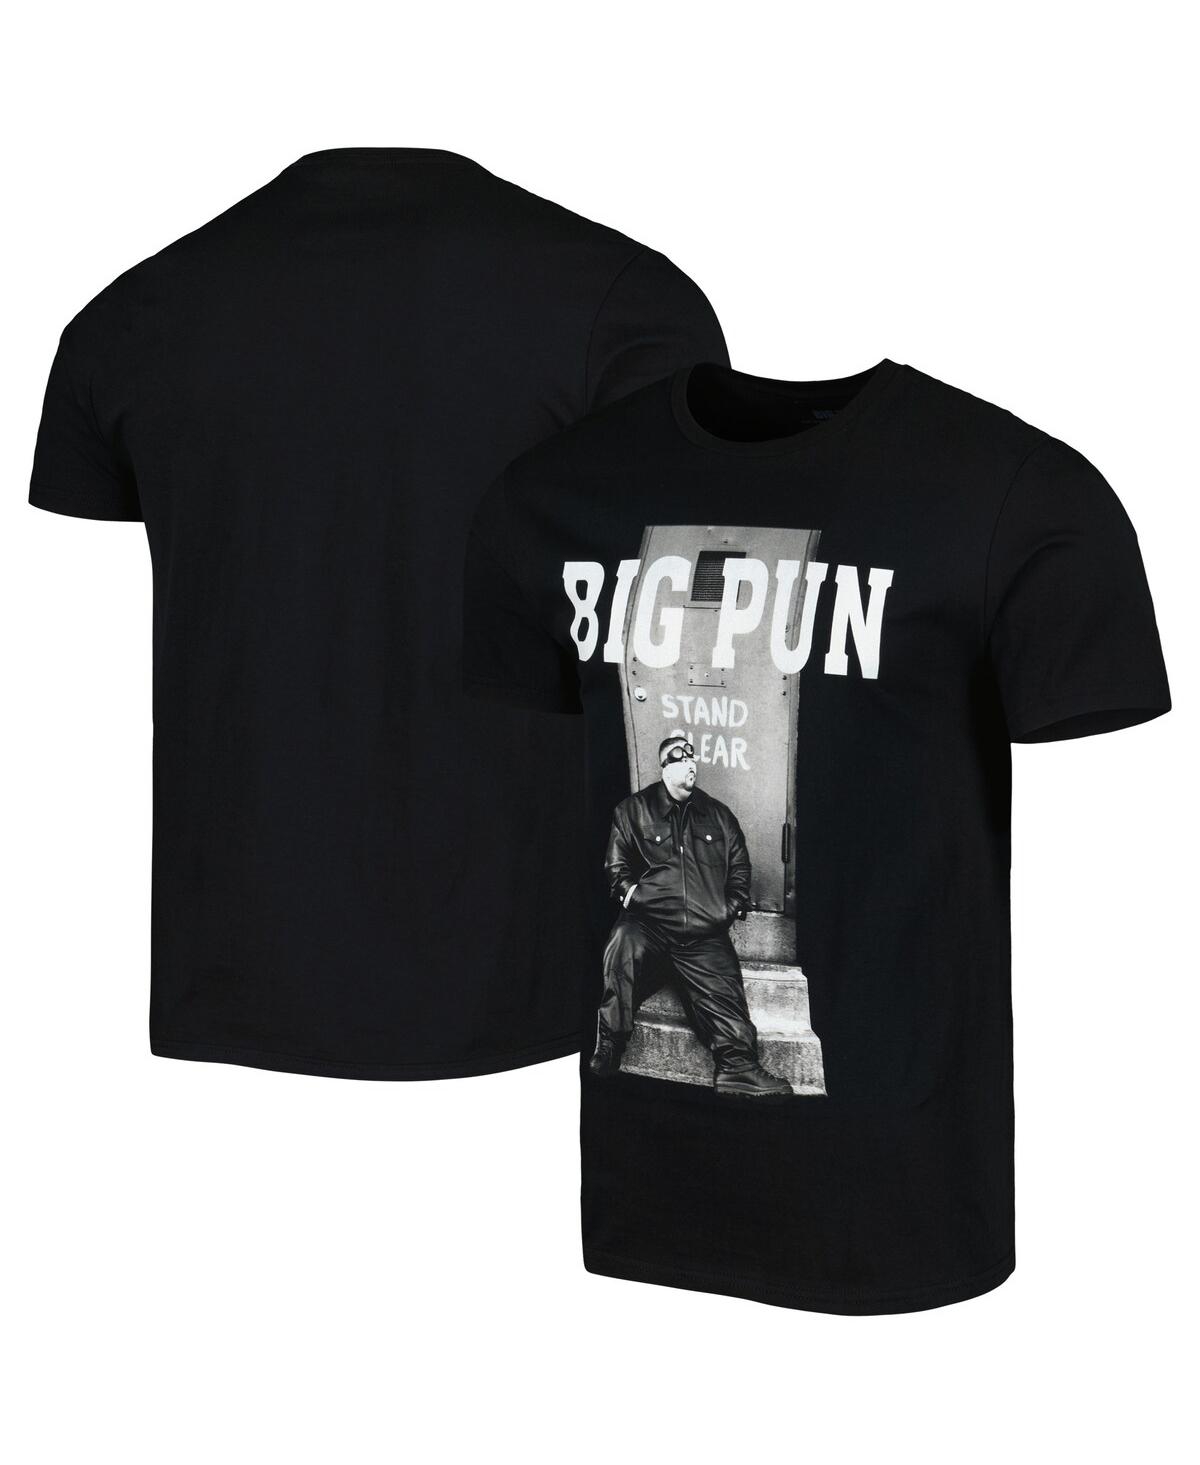 Shop Philcos Men's And Women's Black Big Pun Graphic T-shirt